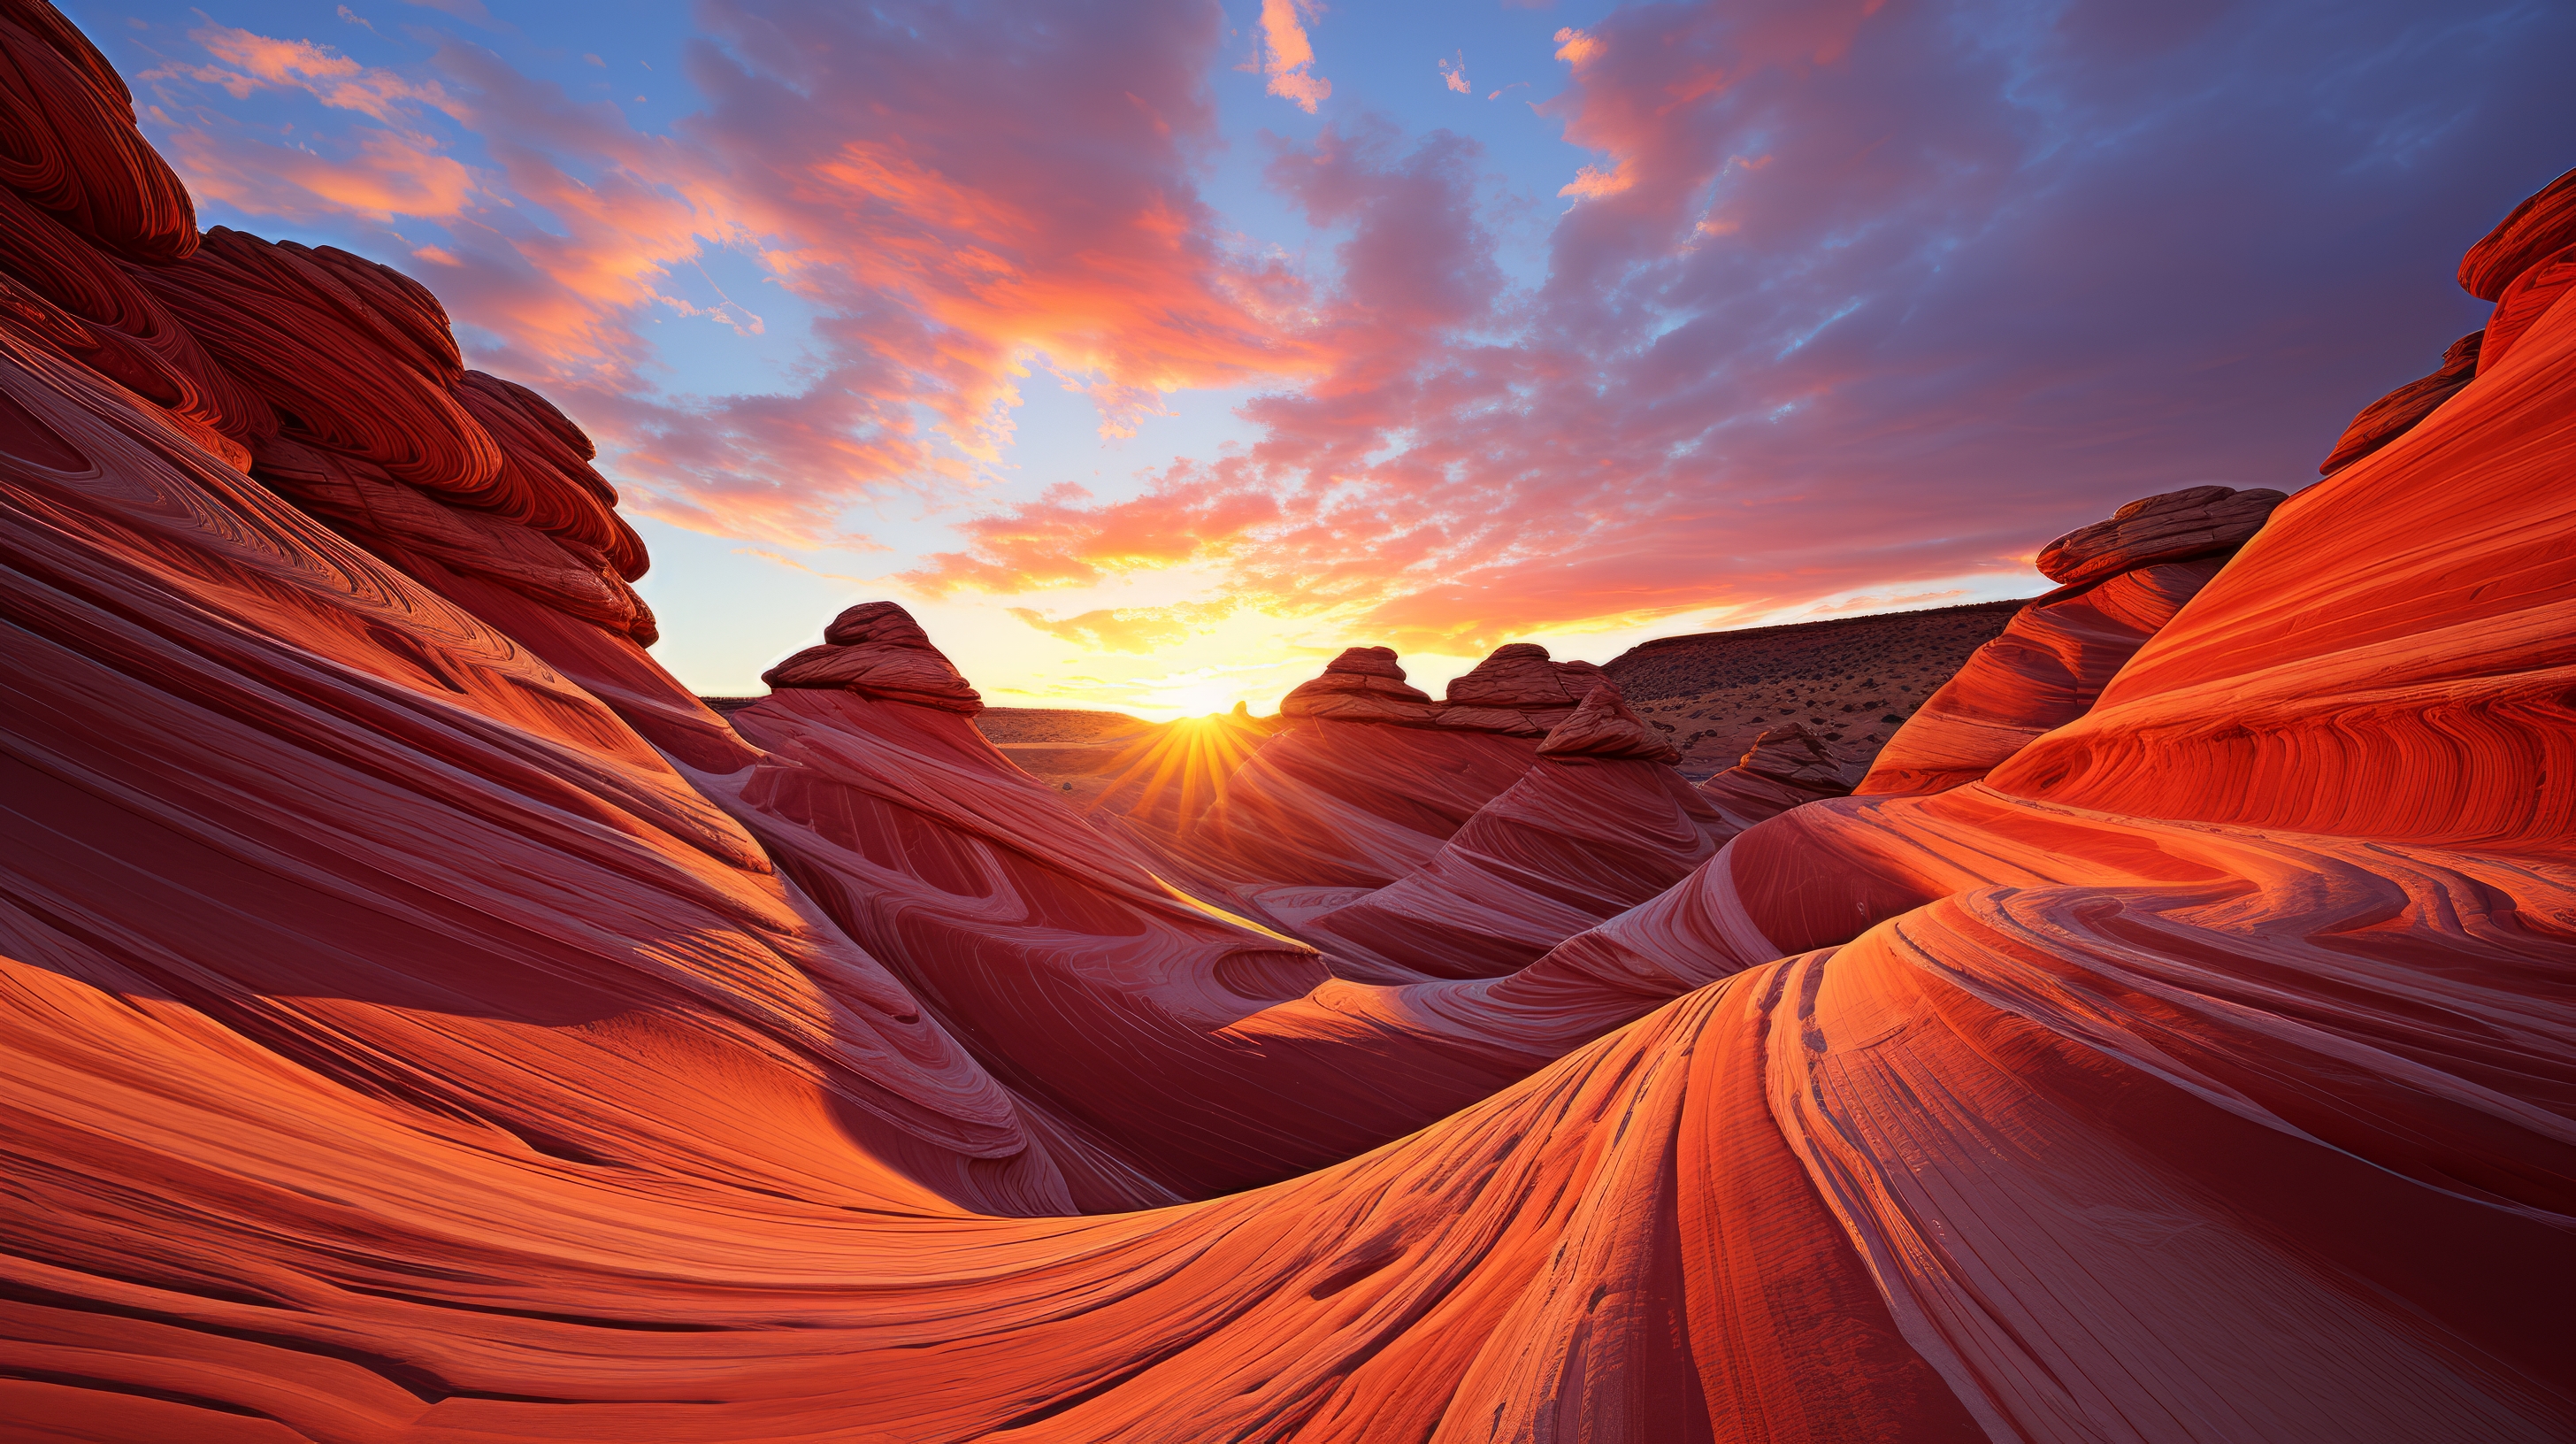 General 2912x1632 AI art mountains landscape desert rock formation sky clouds digital art sunset sunset glow